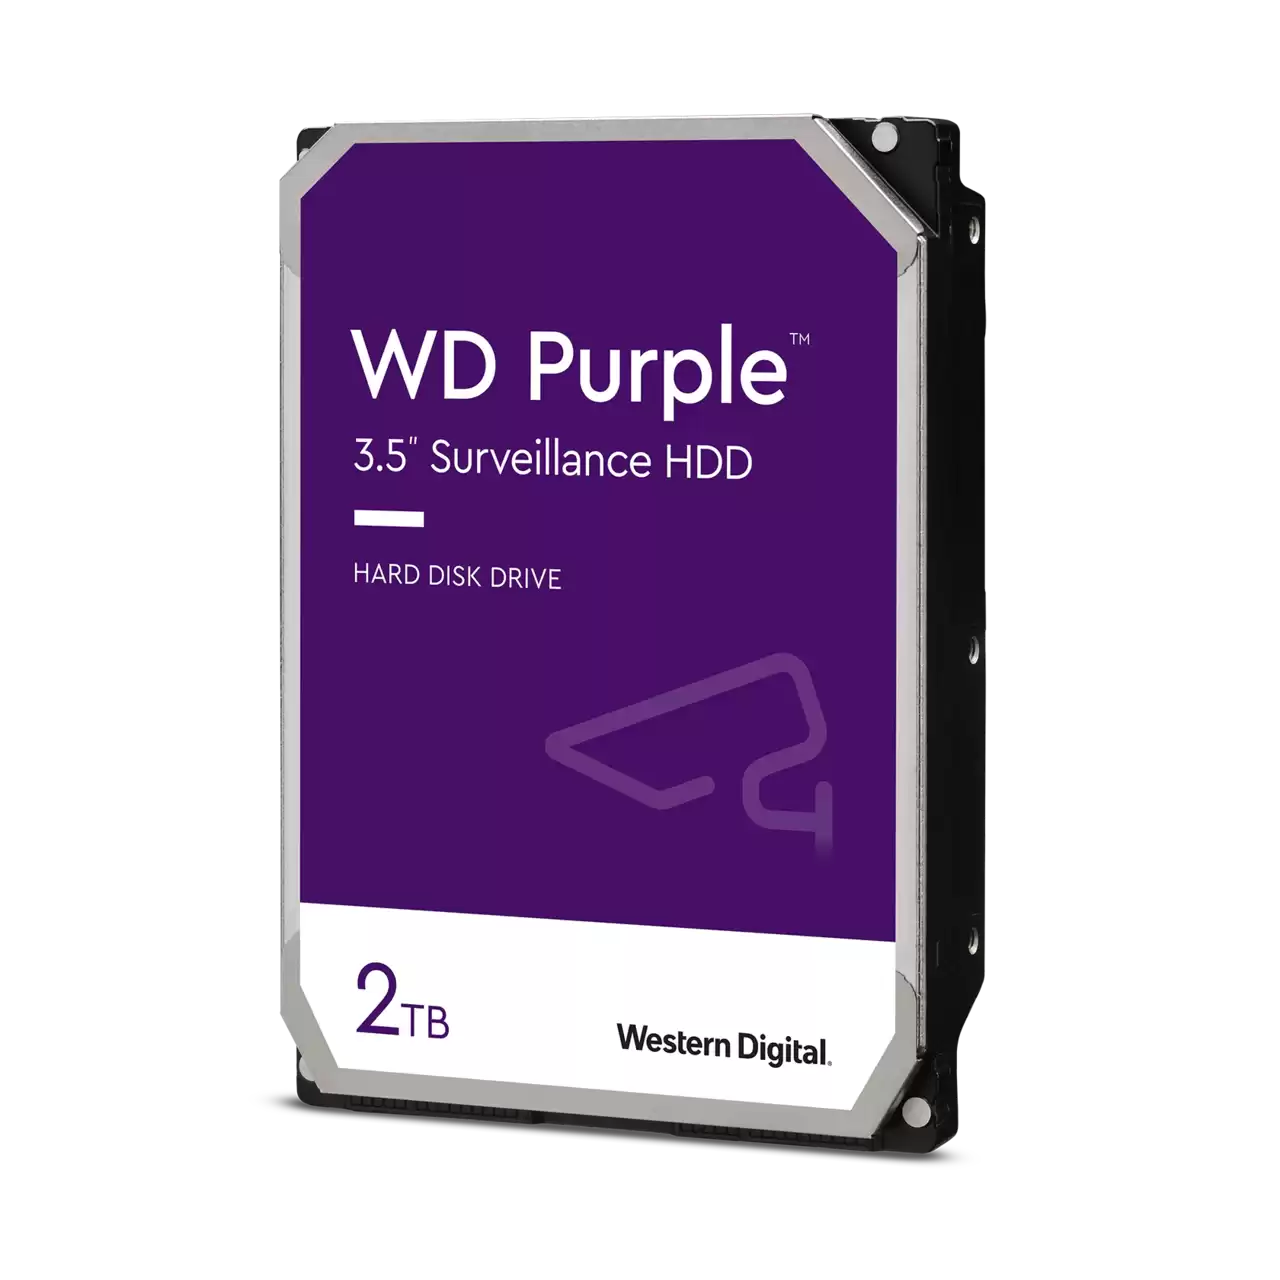 Western Digital WD Purple 3.5" Surveillance HDD - WD22EJRX (256 MB, 5040 rpm, 2 TB)